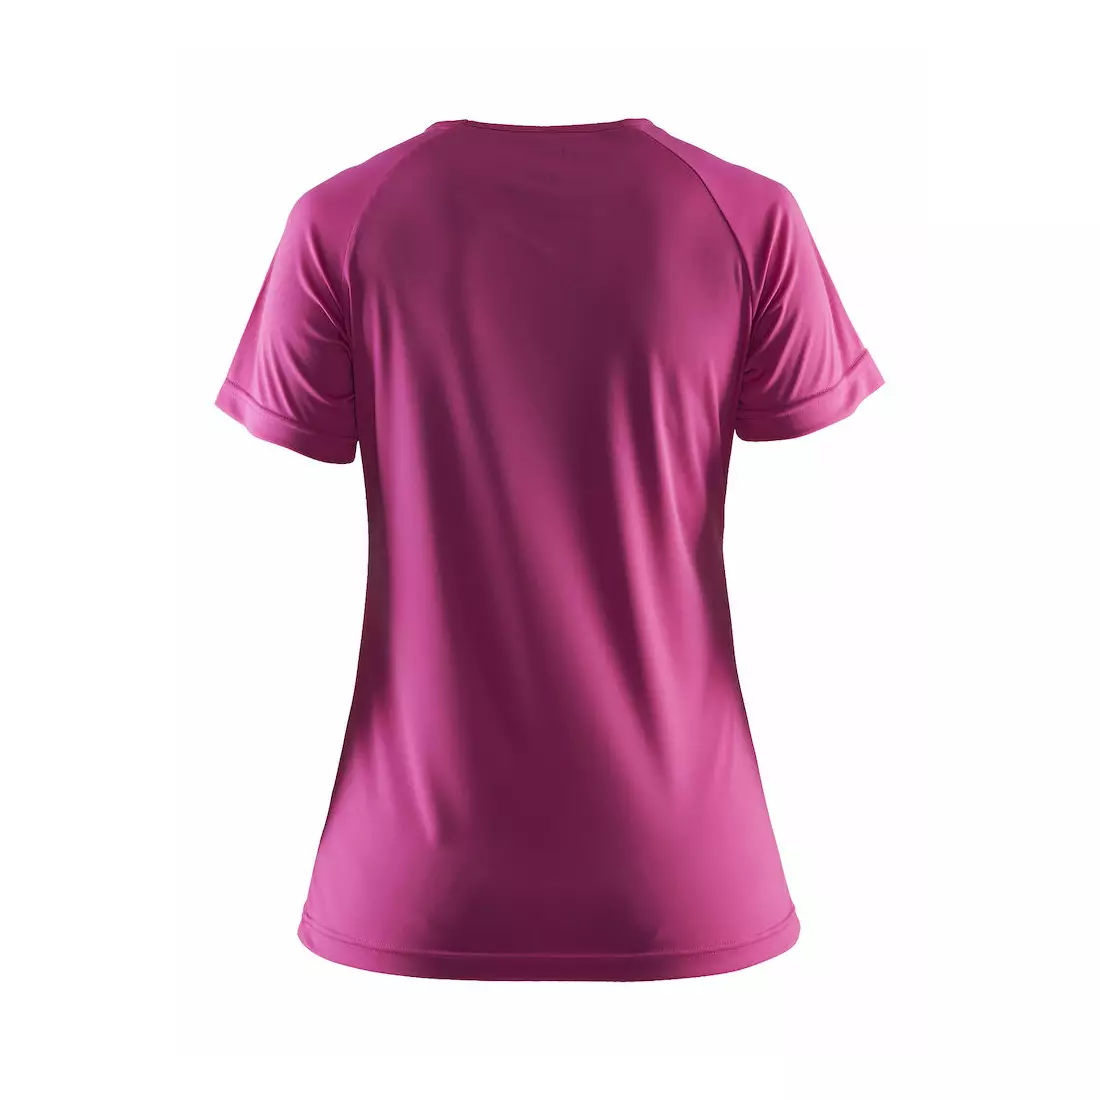 CRAFT PRIME Damen-Sport-T-Shirt 1903176-1403